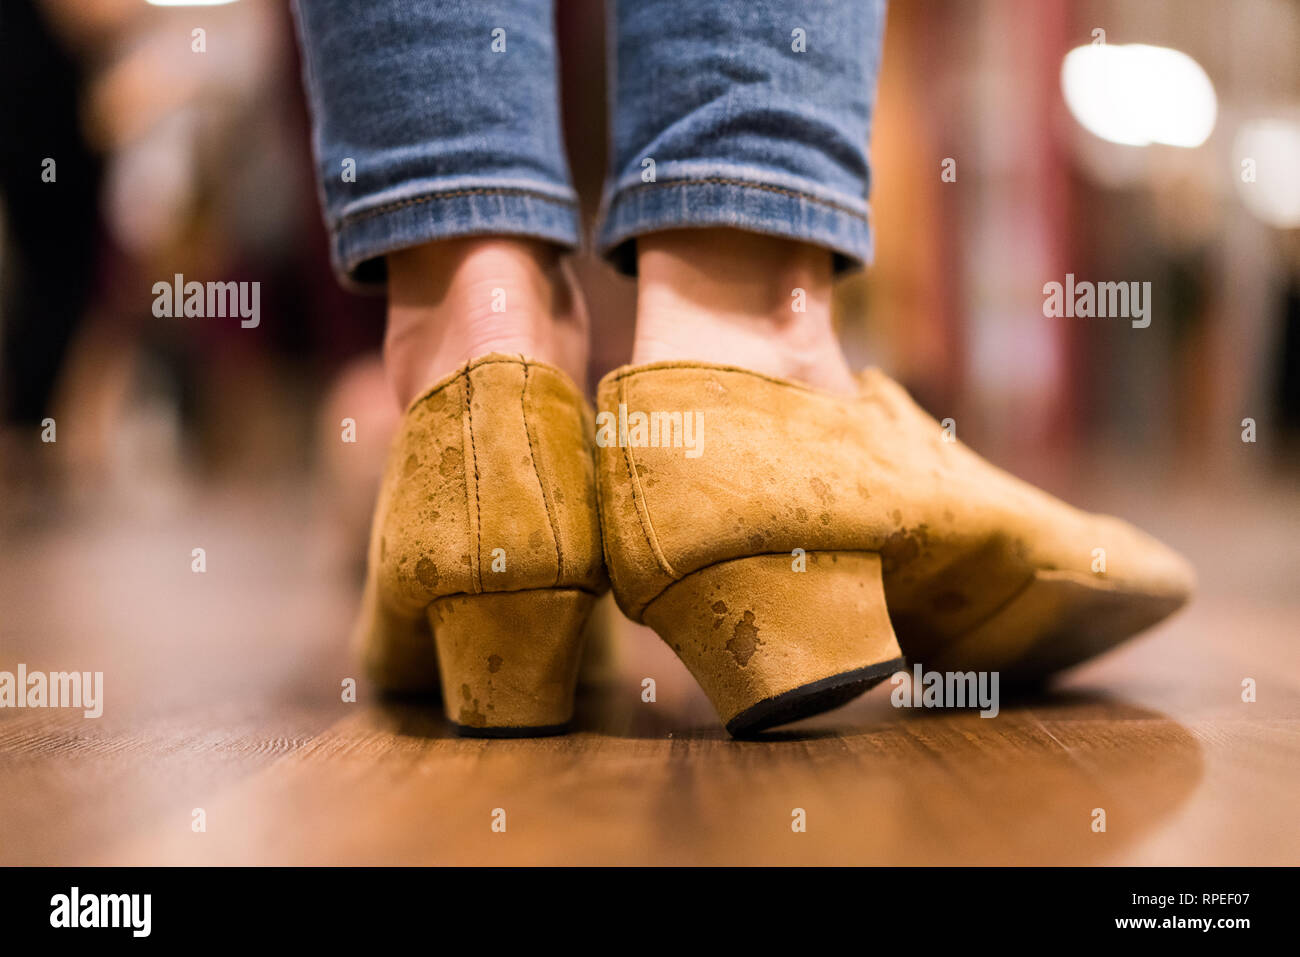 Chaussures de danse tango traditionnel d'une fille. Plancher de bois. Prises au cours de l'atelier de tango. Banque D'Images